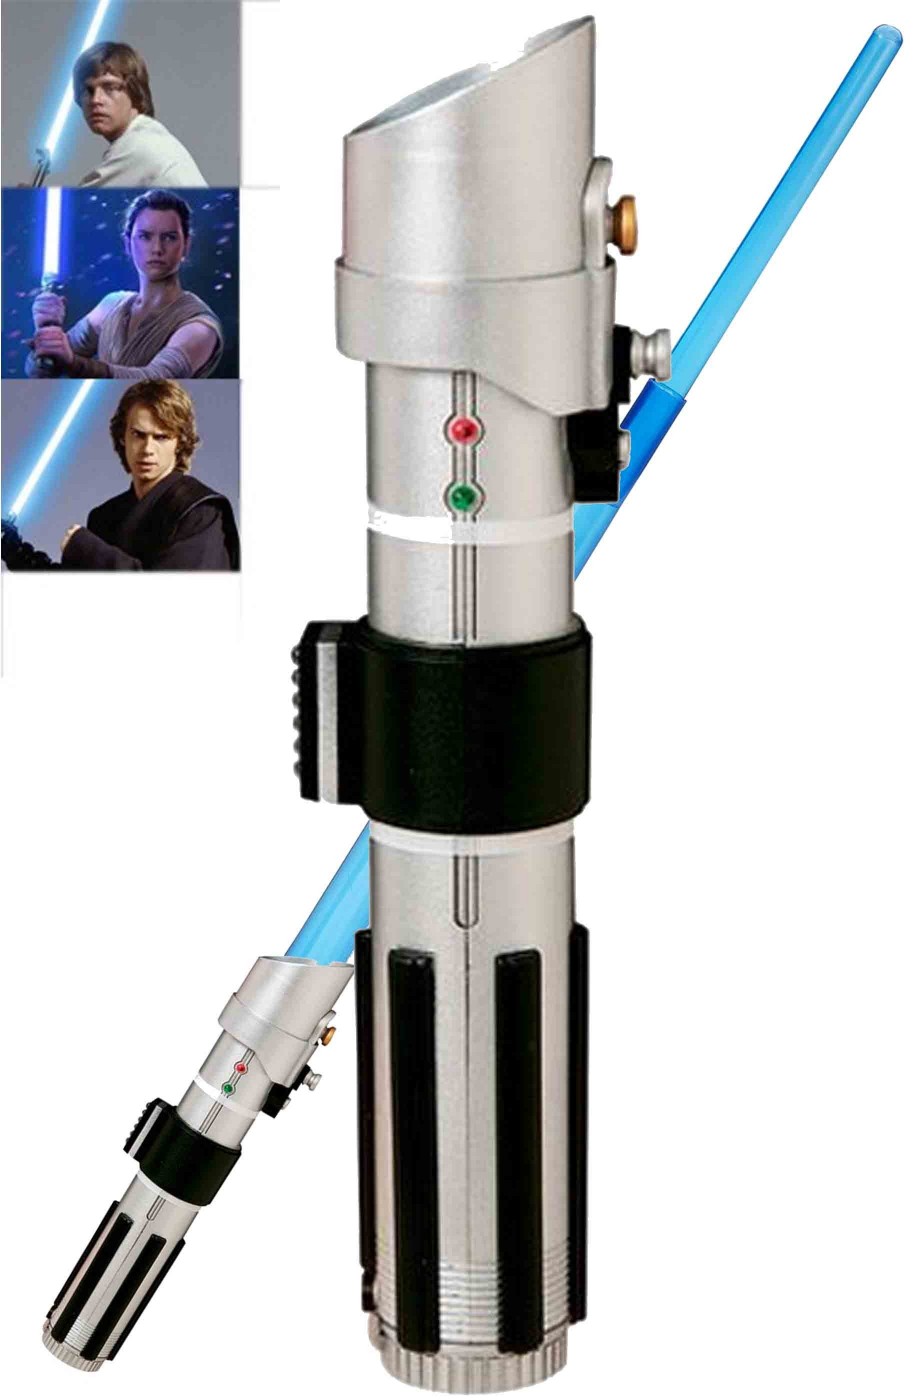 Spada Laser Adulto Anakin Skywalker o Luke azzurra